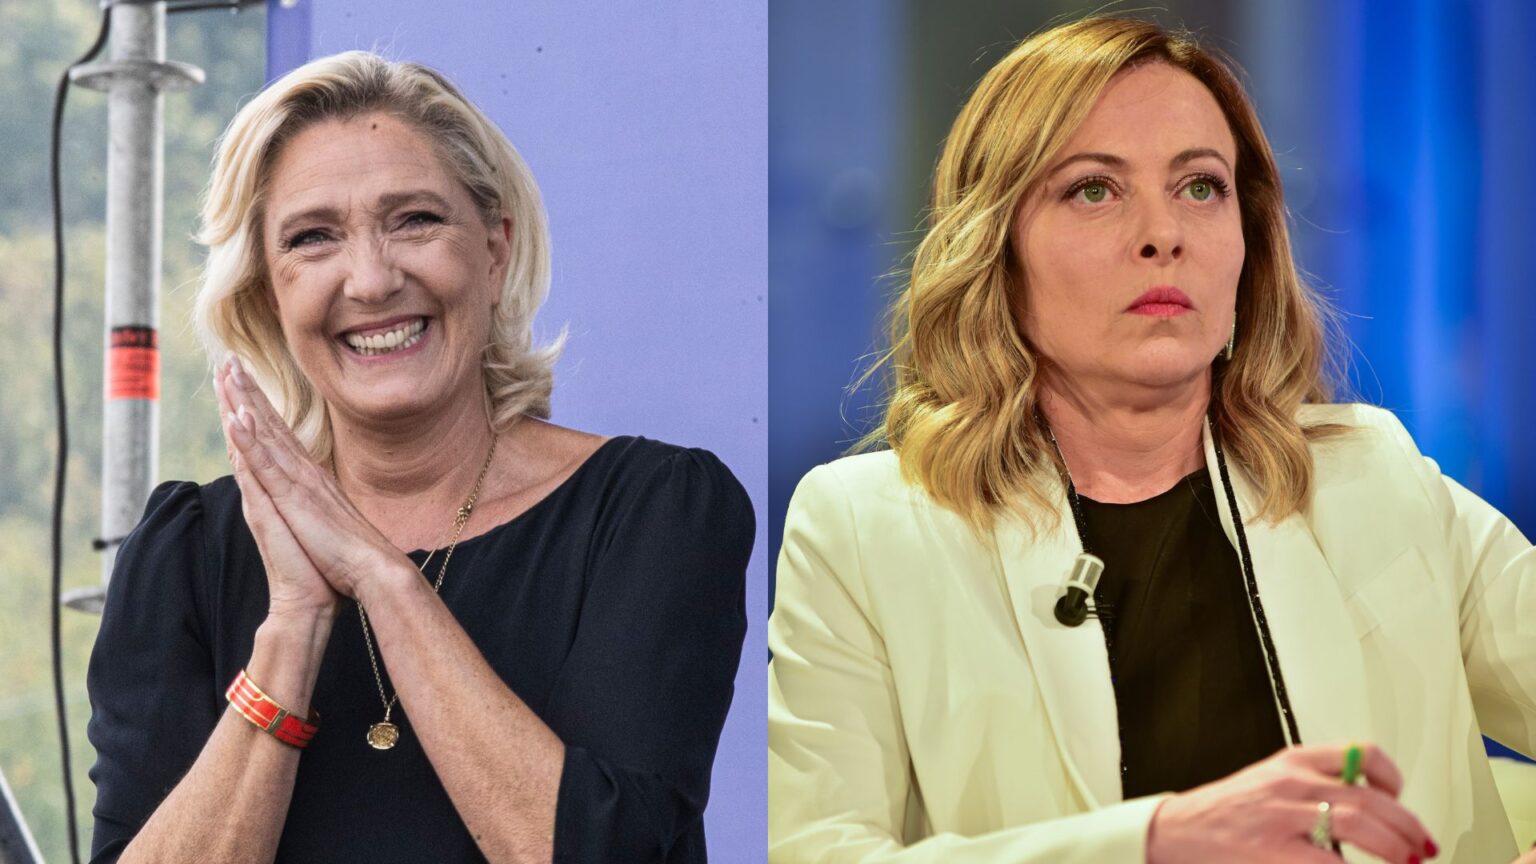 Marine Le Pen e Giorgia Meloni